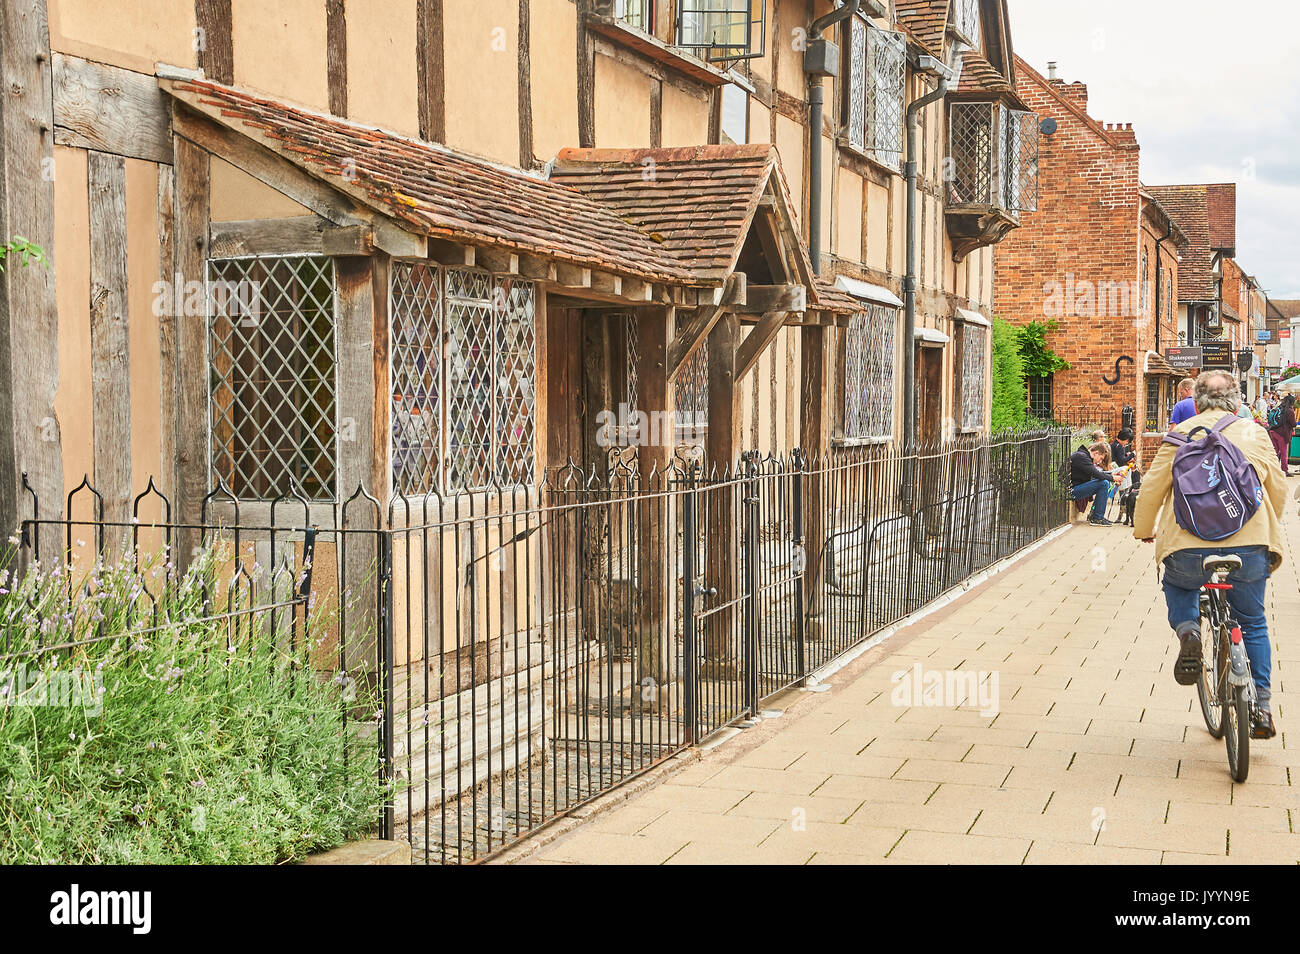 El lugar de nacimiento de William Shakespeare, un edificio de entramado de madera medievales en Stratford upon Avon, Warwickshire, es un edificio histórico protegido. Foto de stock